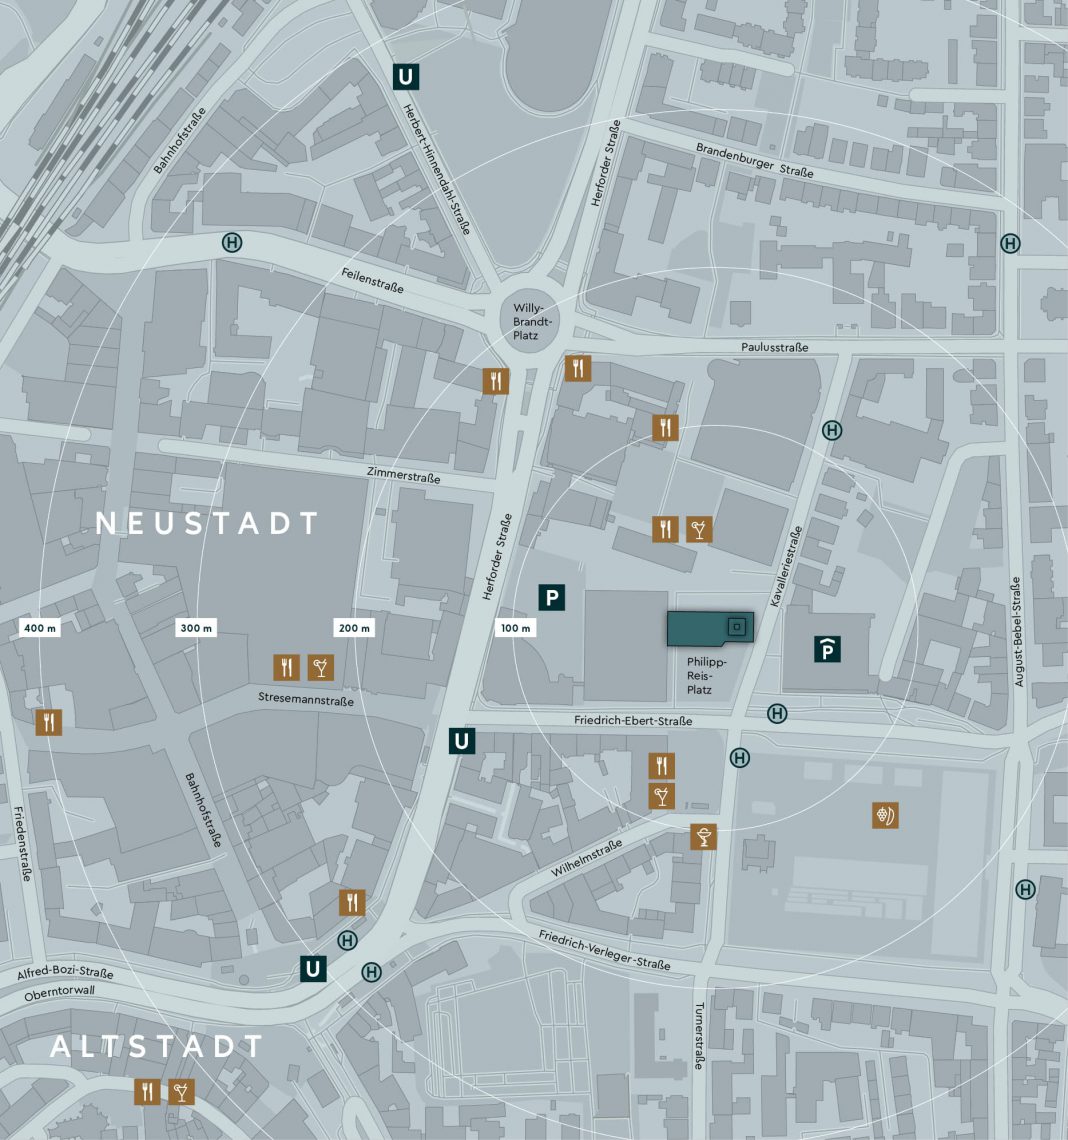 Übersichtskarte deds Innenstadtbereichs rund um das H1, mit Marken für interessante Anlaufpunkte